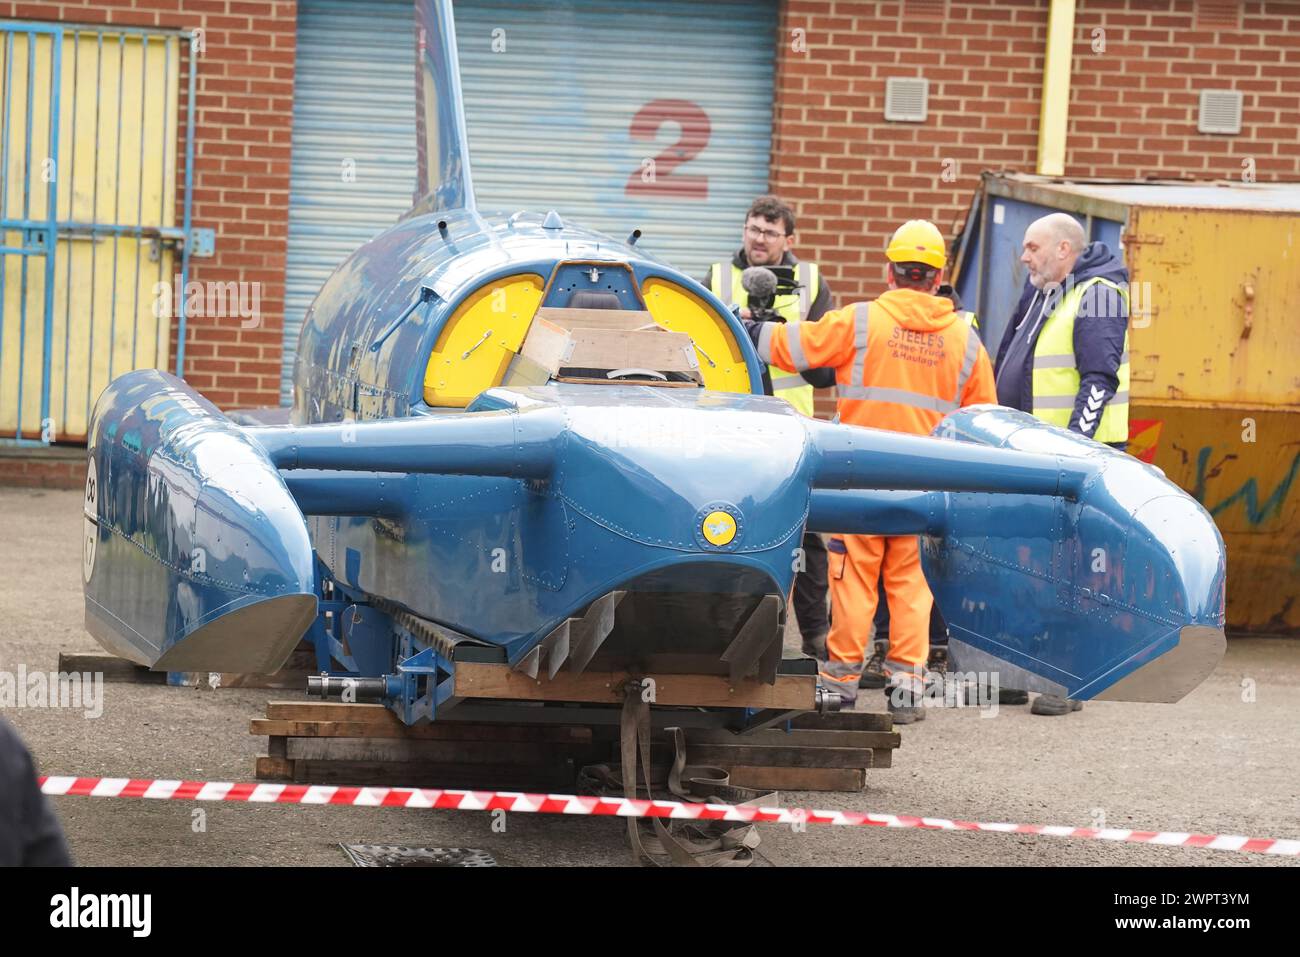 Das restaurierte Wasserflugzeug, Bluebird K7, bevor es auf einen LKW in North Shields geladen wird, als es nach Coniston Water im Lake District zurückkehrt. Bilddatum: Samstag, 9. März 2024. Stockfoto